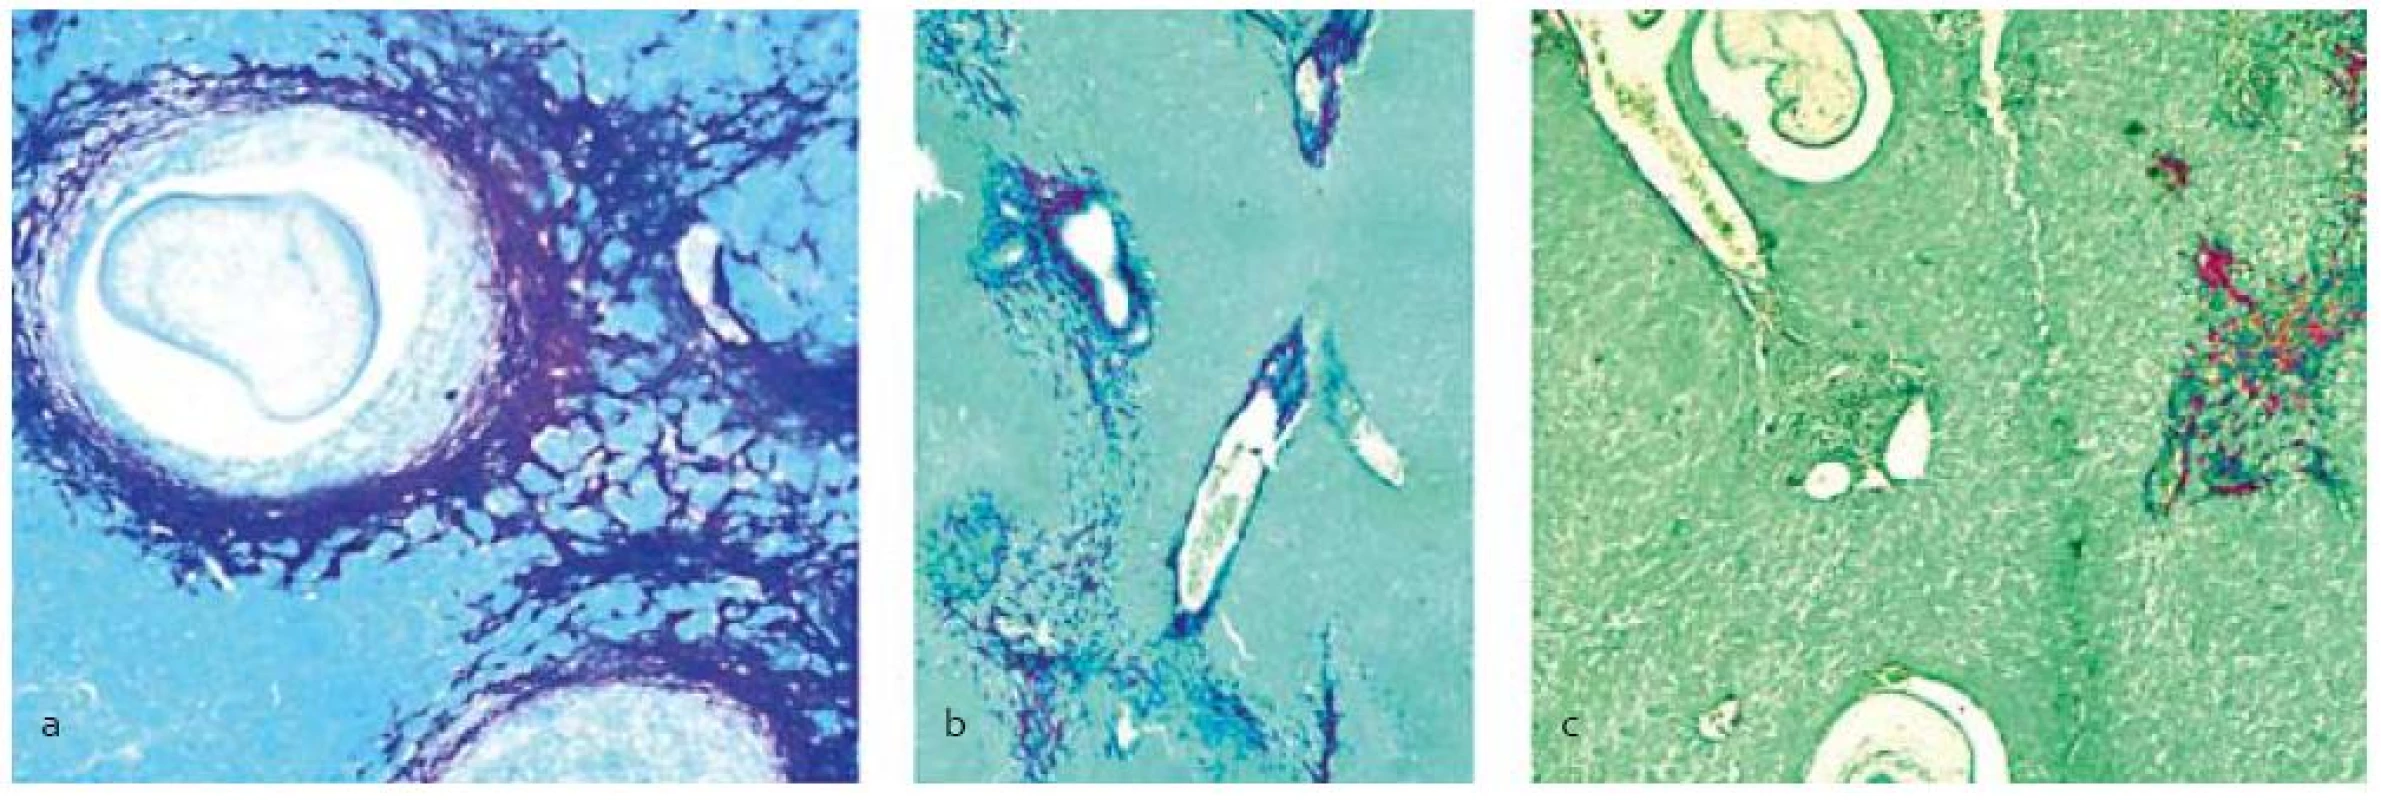 Histopatologická analýza pečene s infekciou larvami M. vogae po terapii praziquantelom samotným (b) a v kombinácii so silymarínom (c), (a) – neliečená kontrola. Akumulácia kolagénu počas fibrogenézy sa lokalizovala pomocou farbenia picrosirius red okolo lariev, ciev, poškodeného tkaniva a difúzne uloženého v parenchýme.&lt;br&gt;
Fig. 1. Histopathological analysis of the liver infected with M. vogae larvae after treatment with praziquantel alone (b) and combined with silymarin (c), (a) – untreated control. Accumulation of the collagen during fibrogenesis was localized by the picrosirius red staining around larvae, vessels, destroyed tissue and as diffused lesions in the parenchyma.